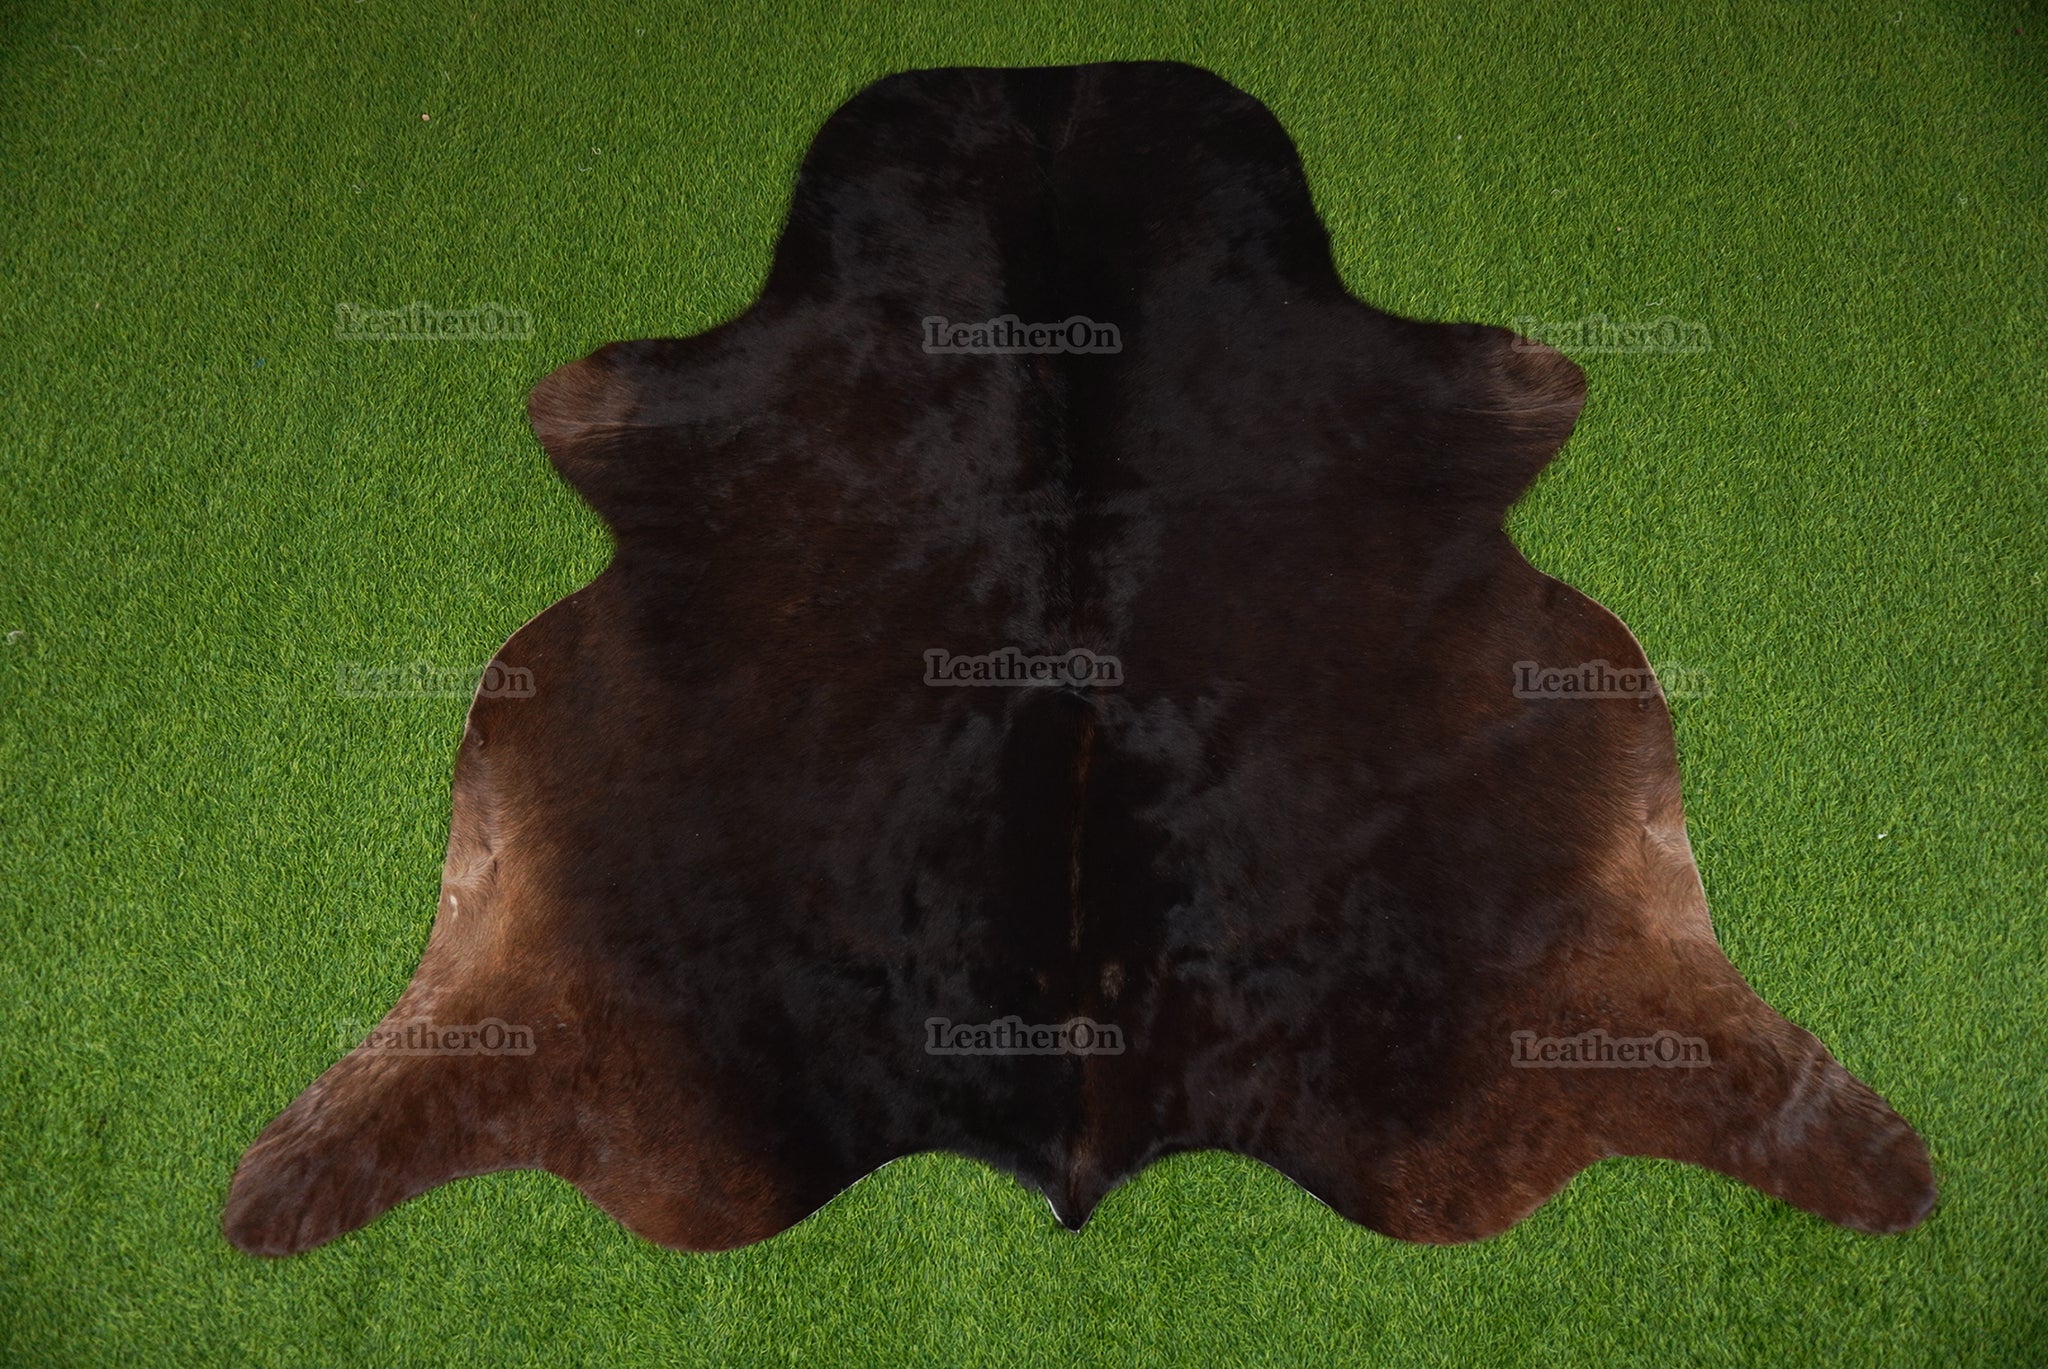 Black Cowhide (5 X 5 ft.) Exact As Photo Cowhide Rug | 100% Natural Cowhide Area Rug | Real Hair-on Leather Cowhide Rug | C883